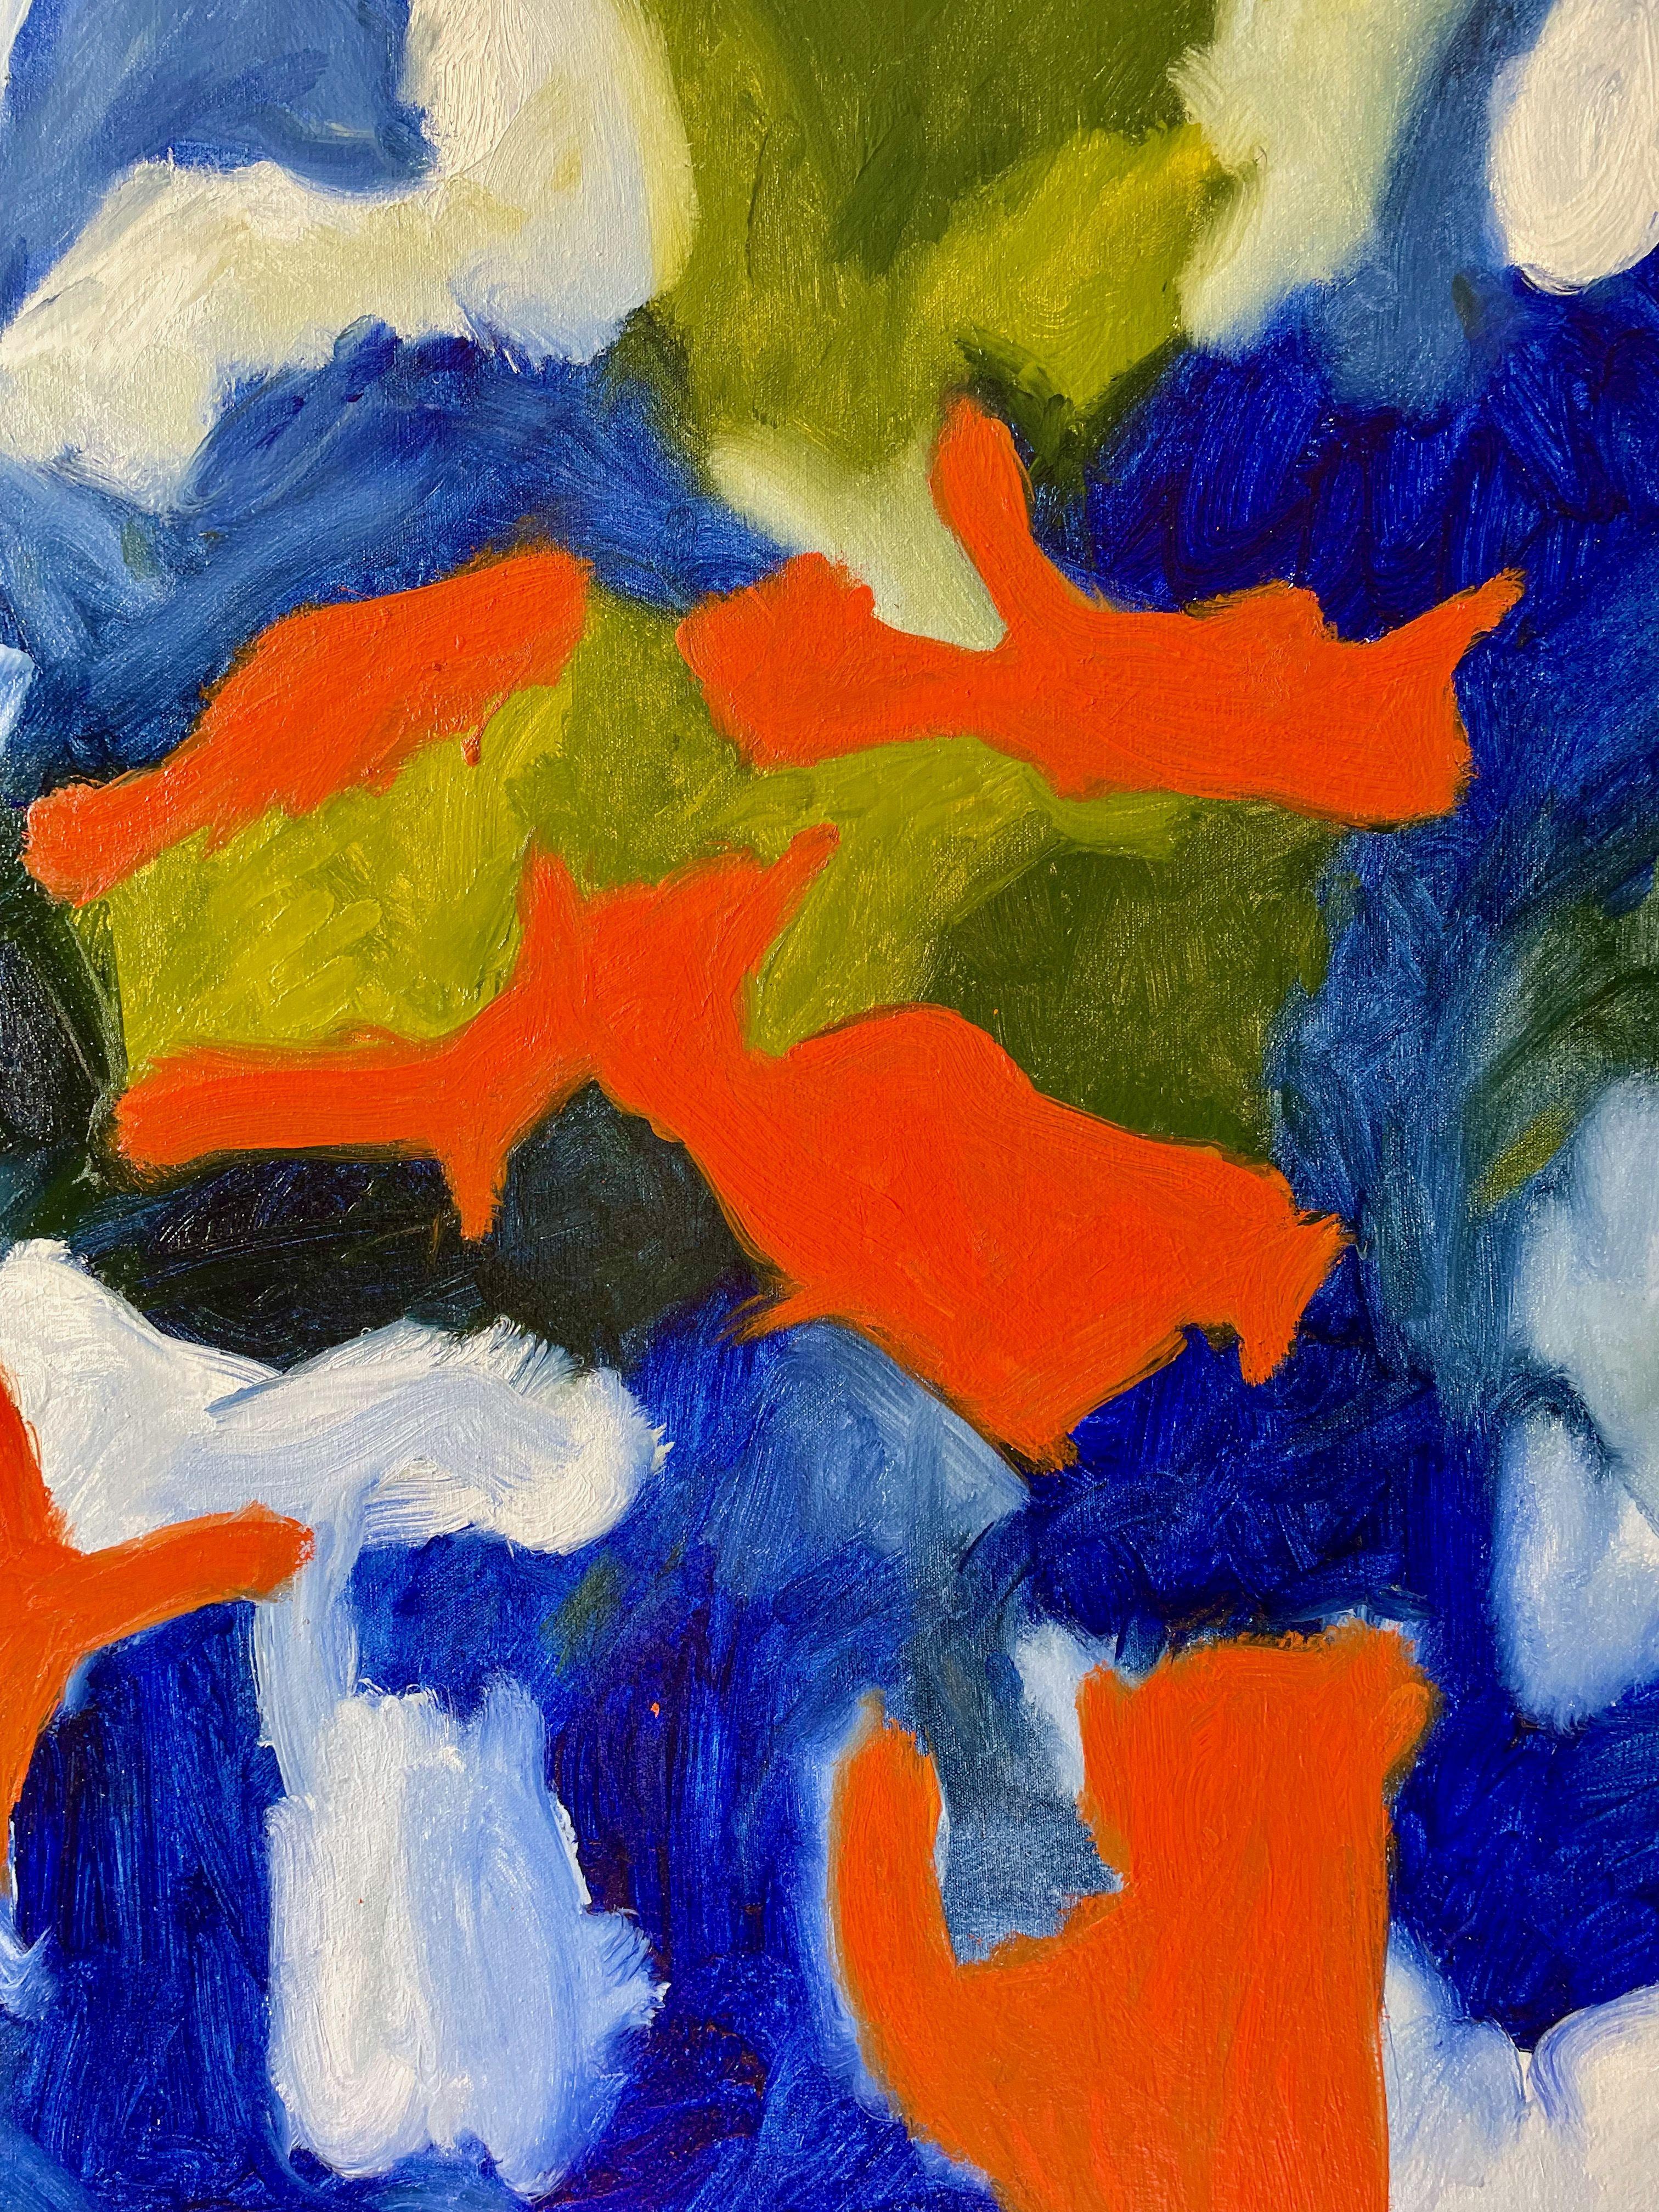 Kupferstich, Gemälde, Öl auf Leinwand – Painting von Steven Miller